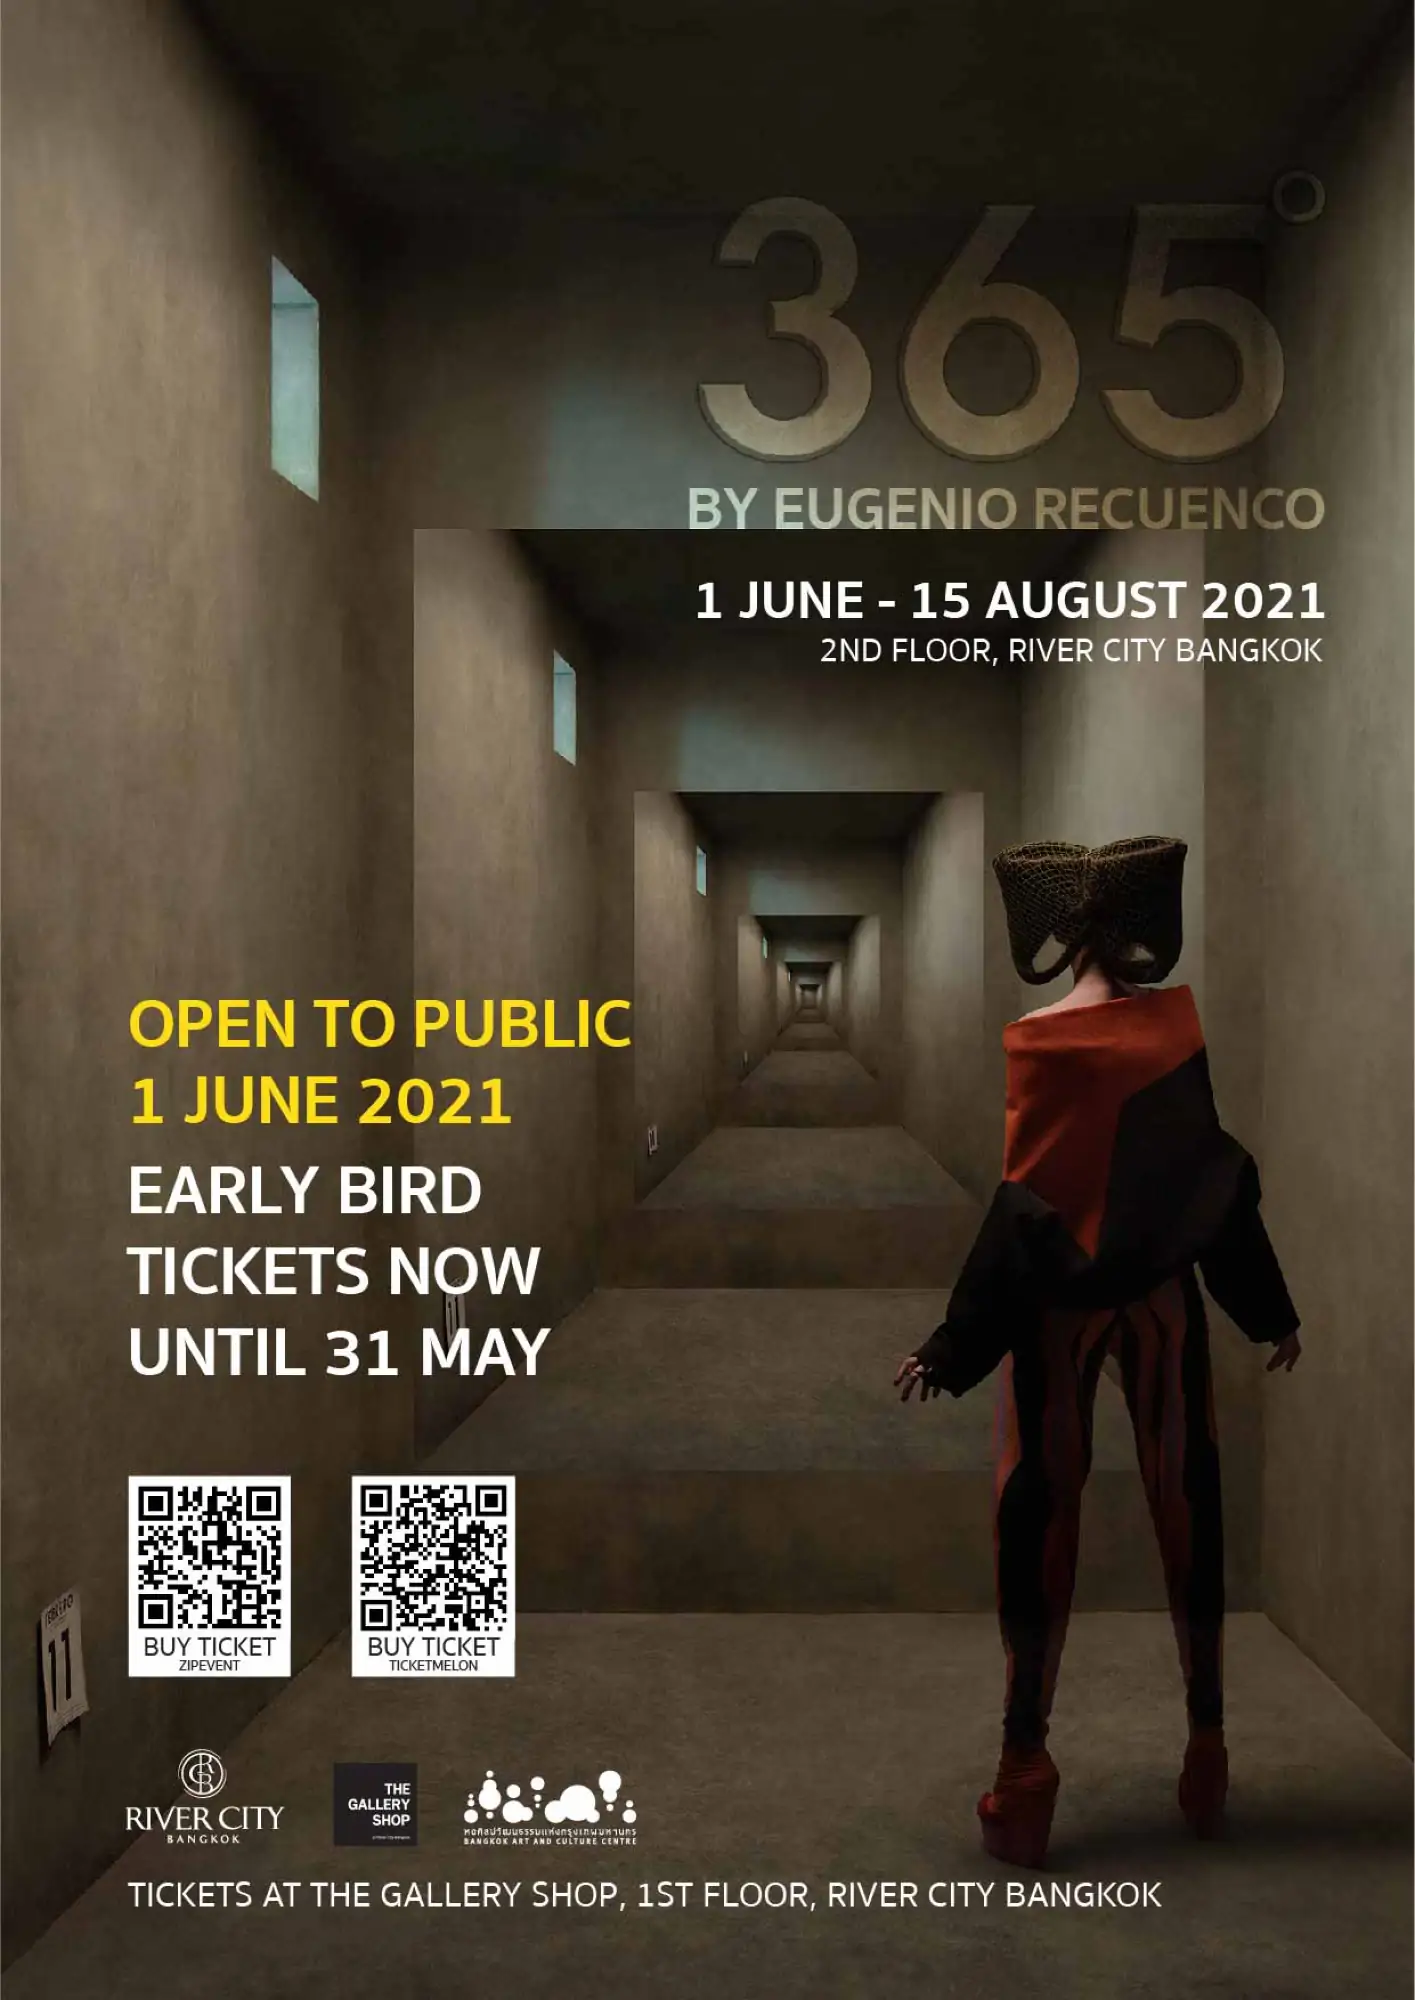 「365°」展覽期間為2021年6月1日至8月15日。早鳥票即日起至5月31日販售（圖片來源：River City Bangkok）